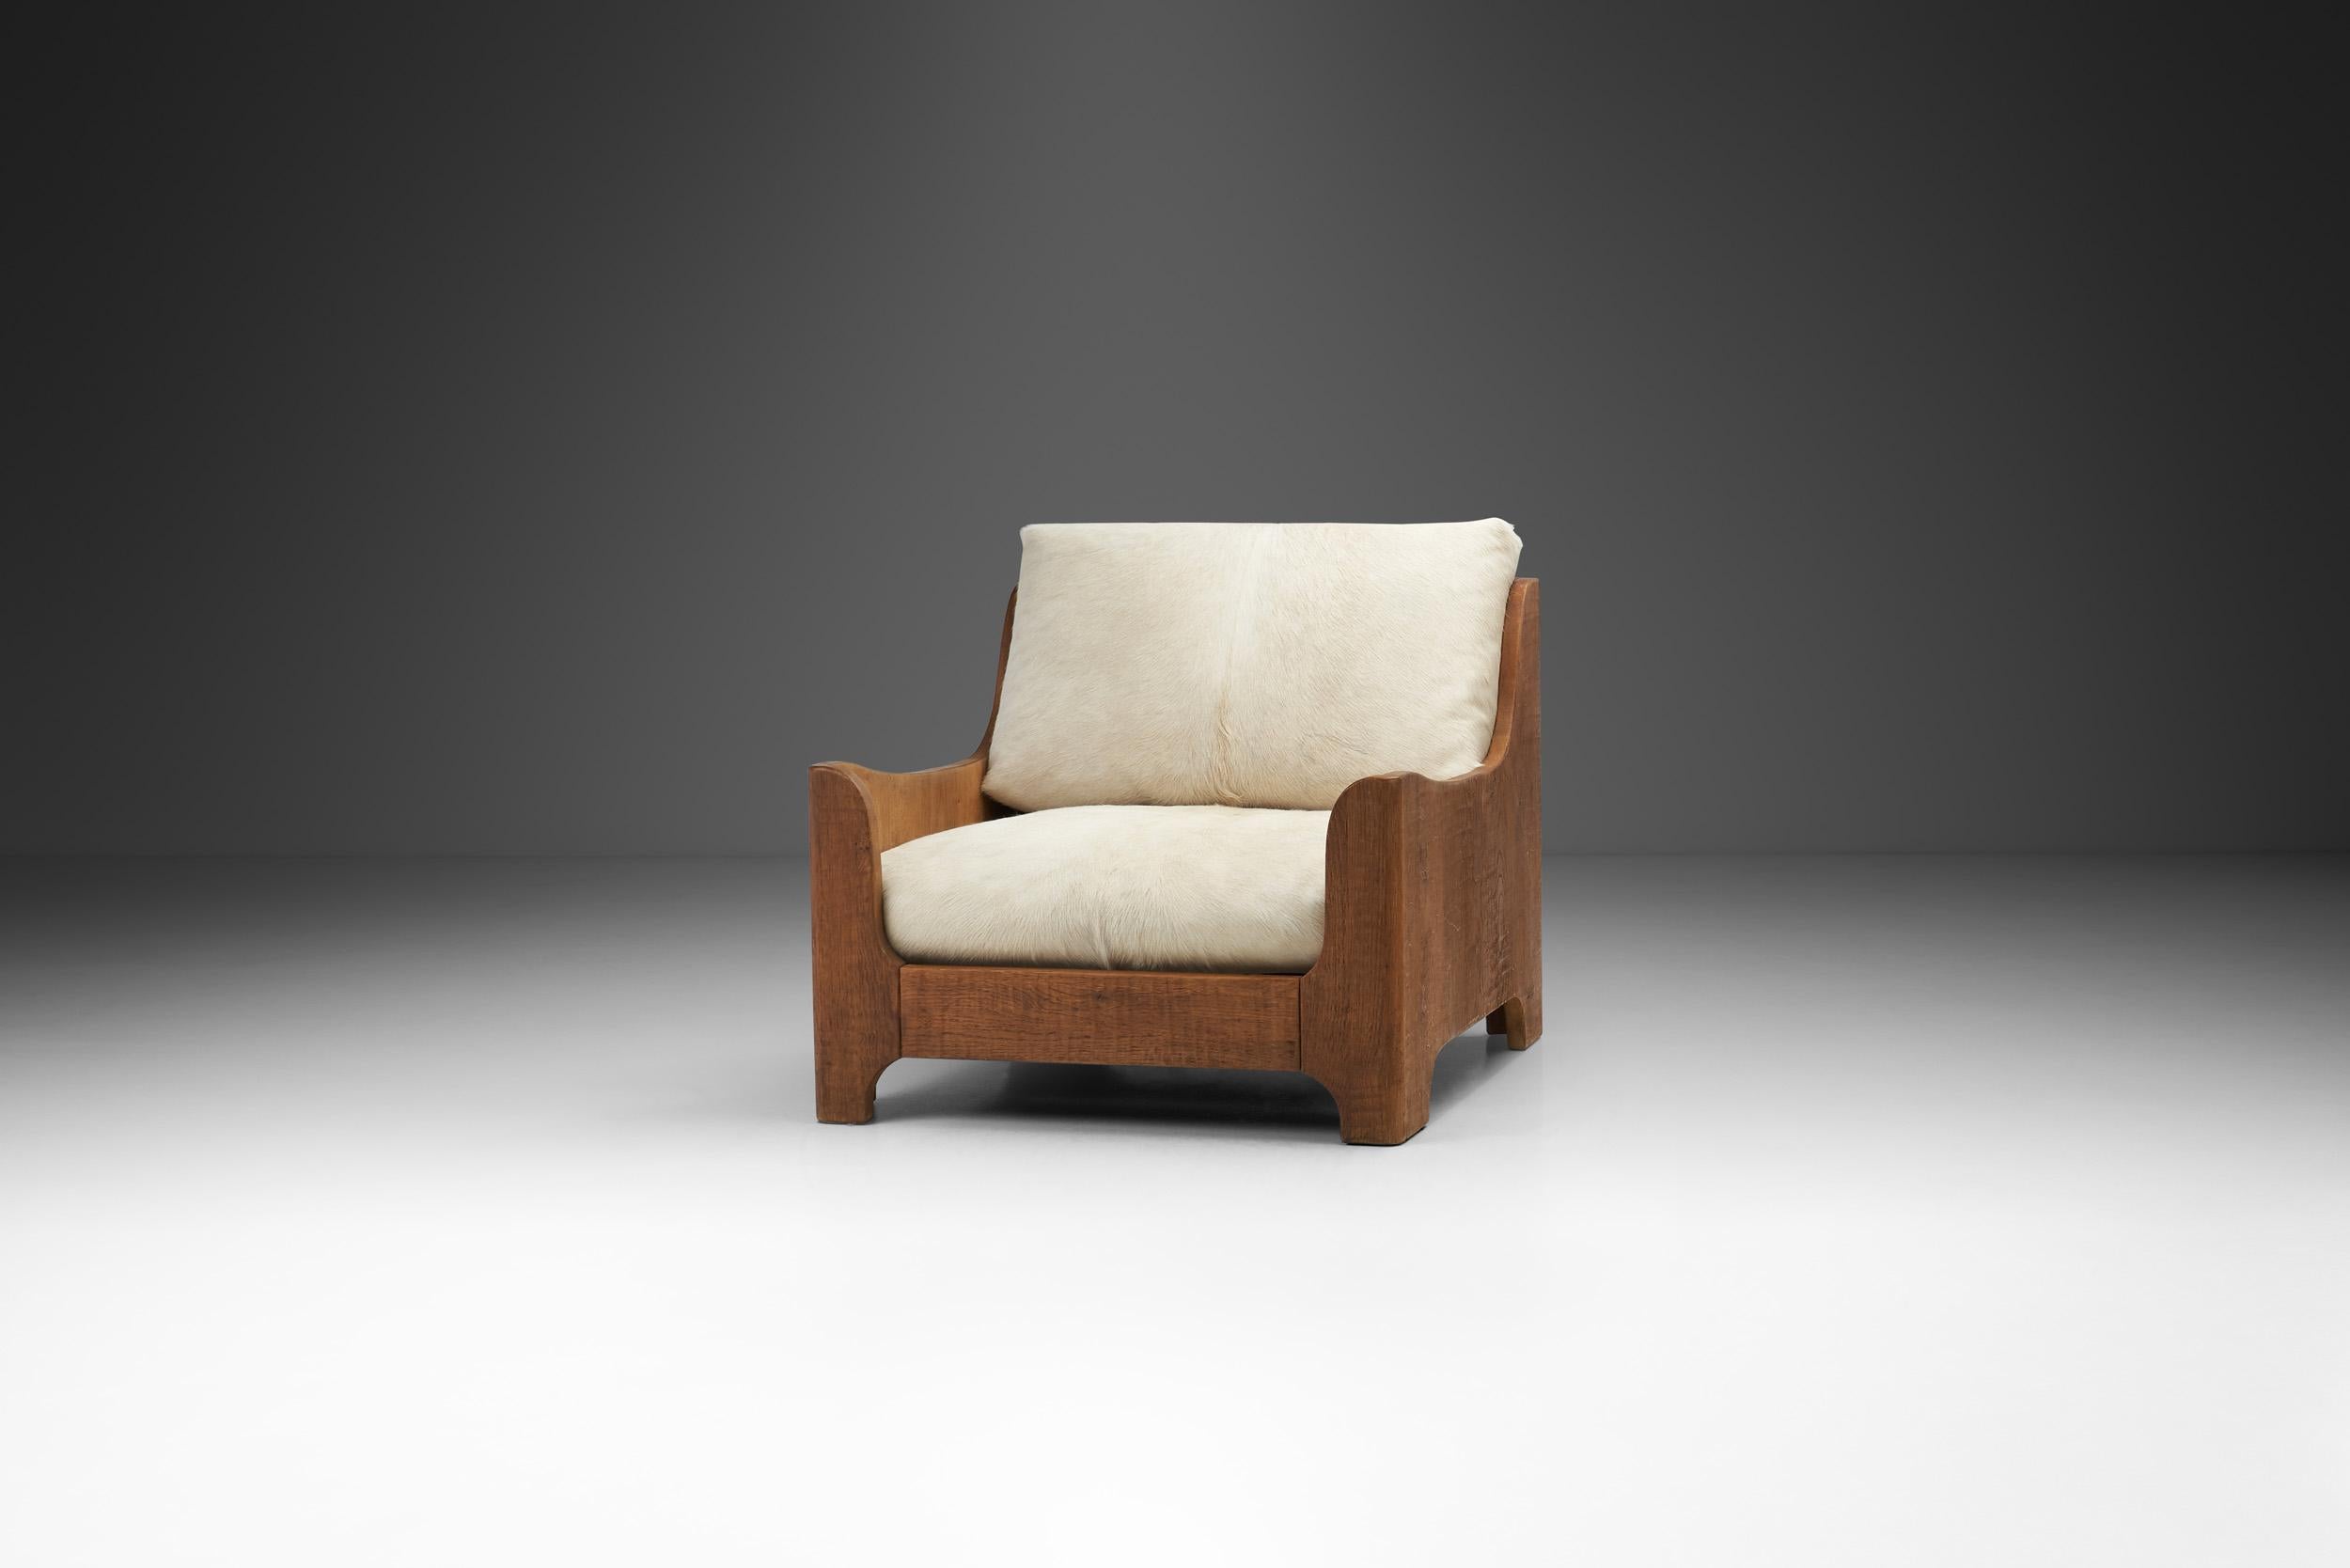 Cette chaise longue est clairement décorative, avec des formes indulgentes et une attitude sophistiquée et sartoriale. Non seulement la qualité est évidente, mais les influences subtiles de l'époque Art déco sont également perceptibles.

Définies